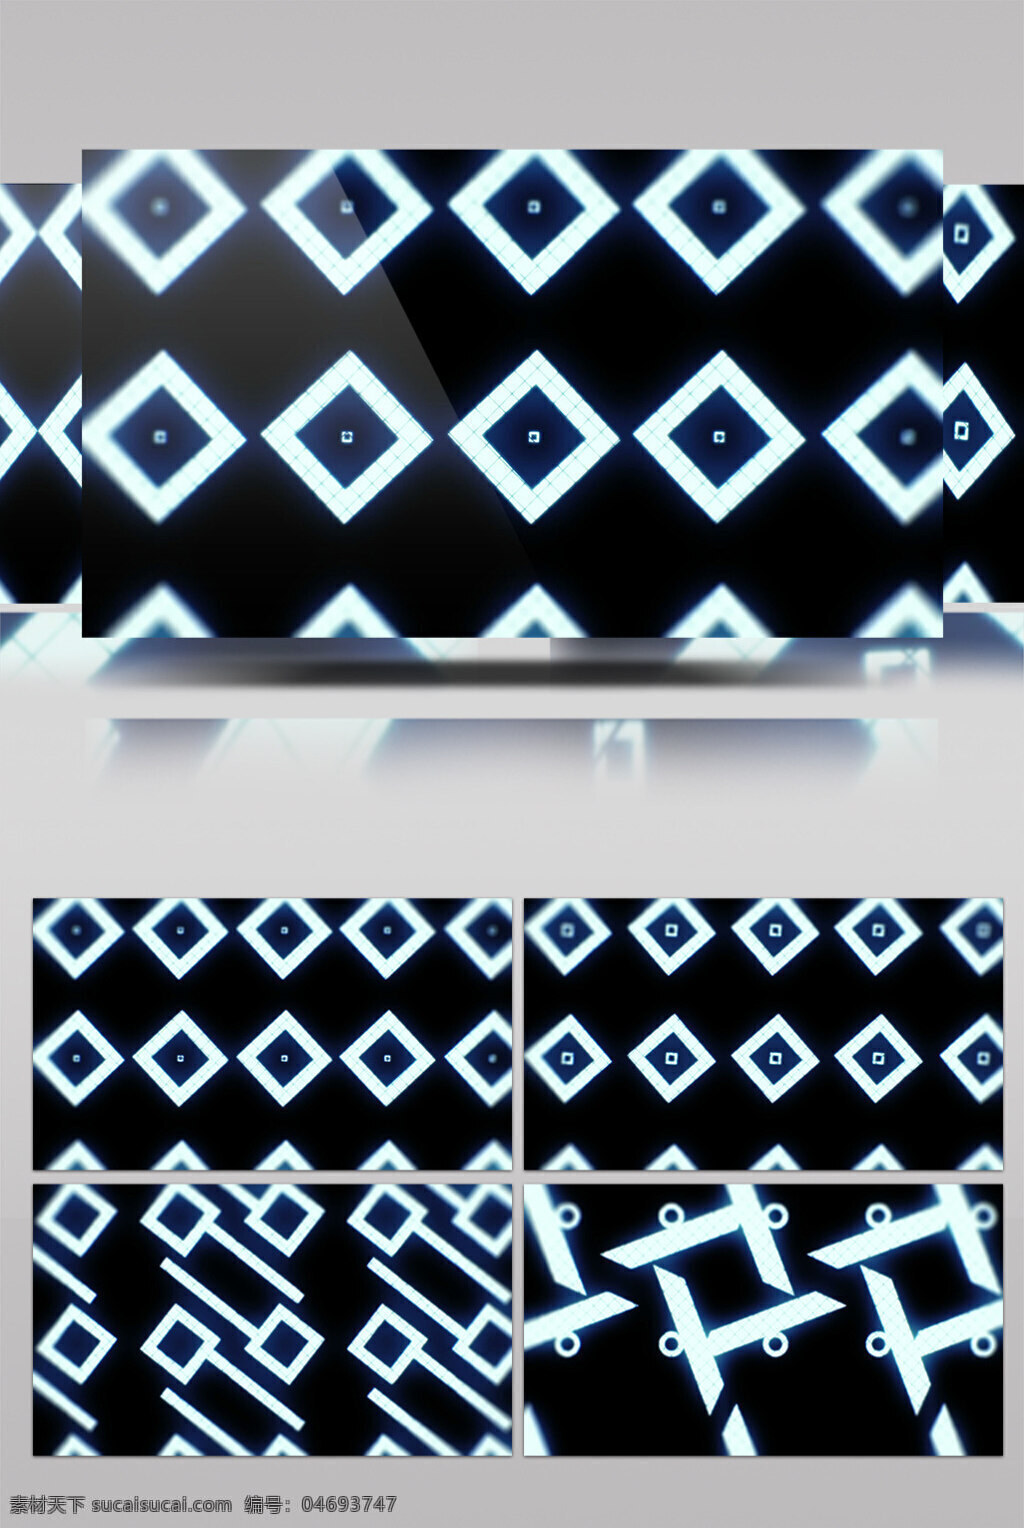 光 矩阵 视频 棱形白色矩阵 光斑碎点 漂浮光 浮光掠影 前进隧道 3d视频素材 特效视频素材